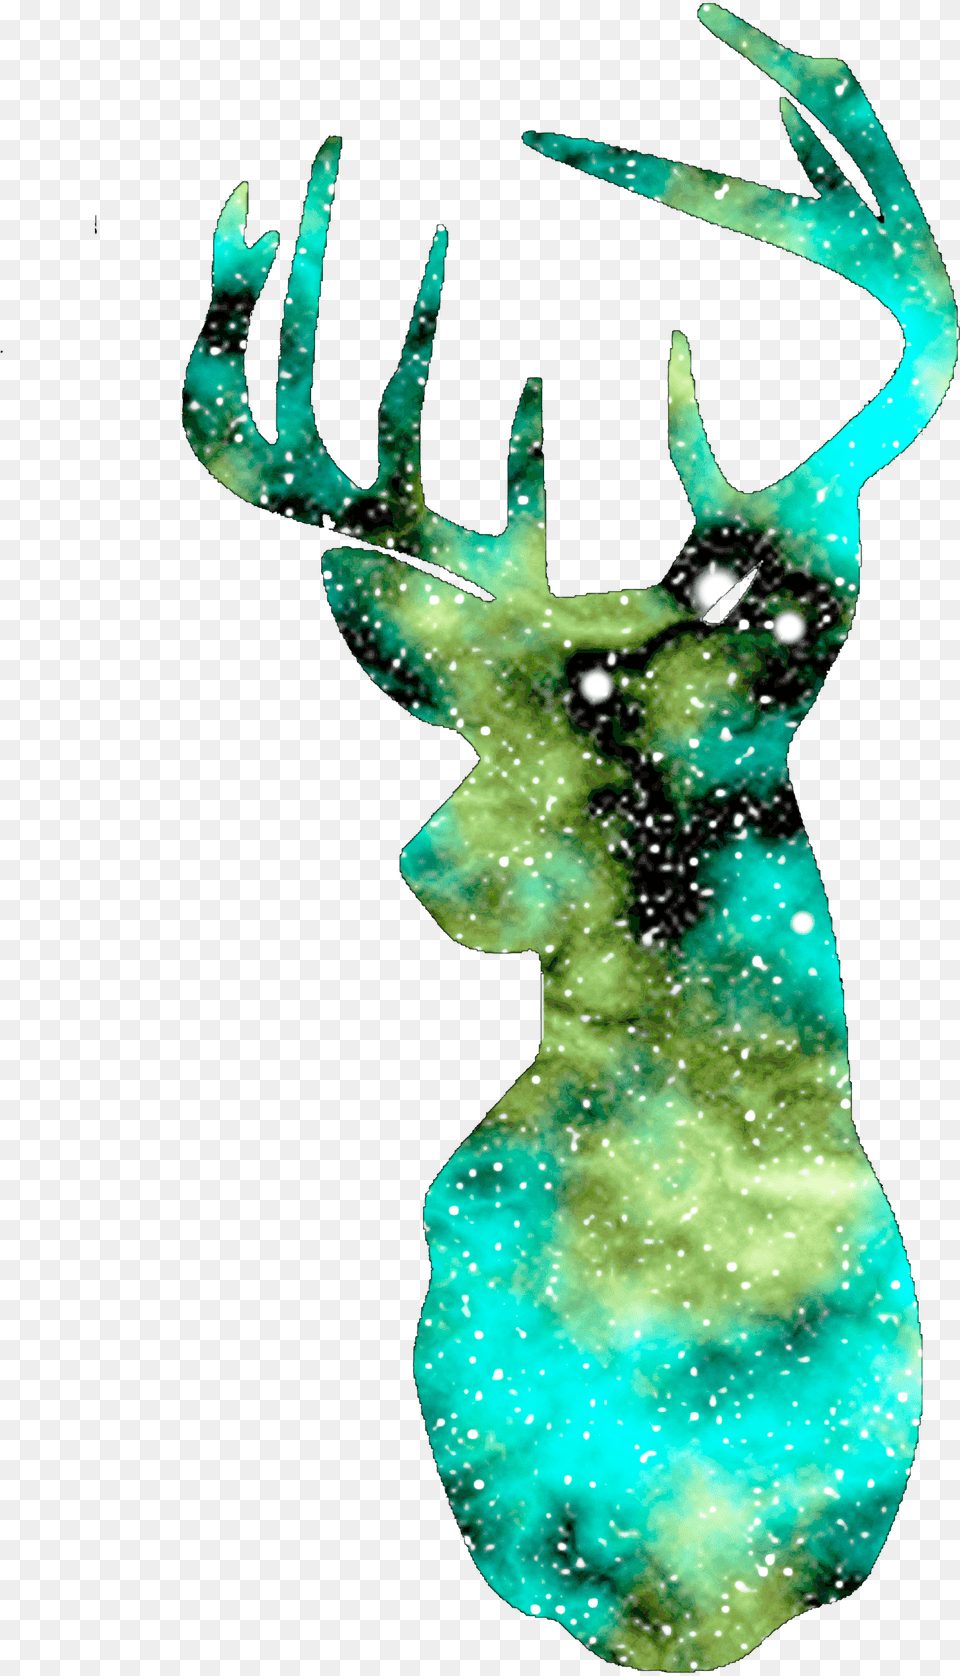 Deer Silhouette Galaxy Transparent Galaxy Deer Png Image